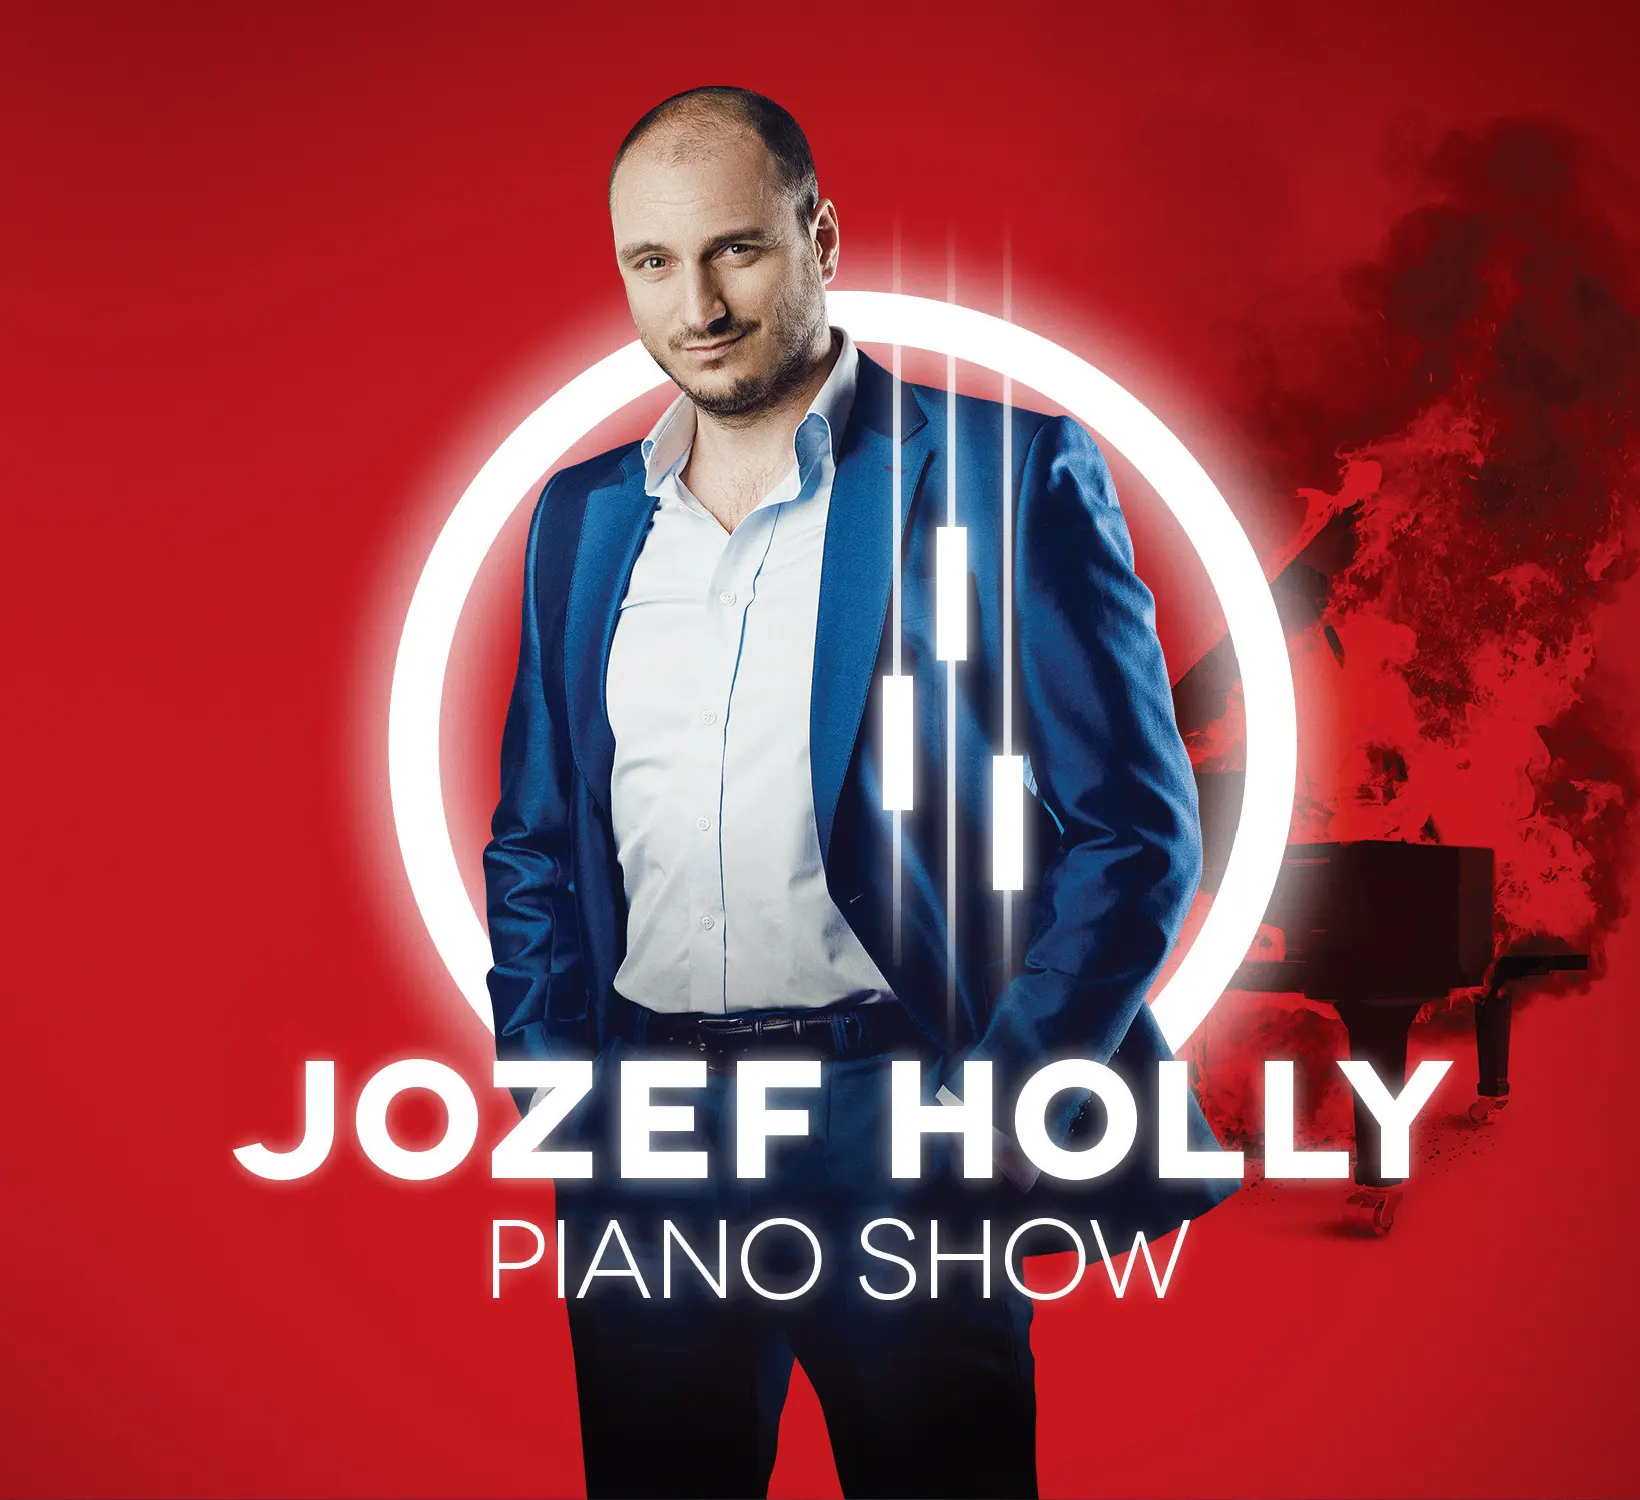 Piano Show album od Jozefa Holleho